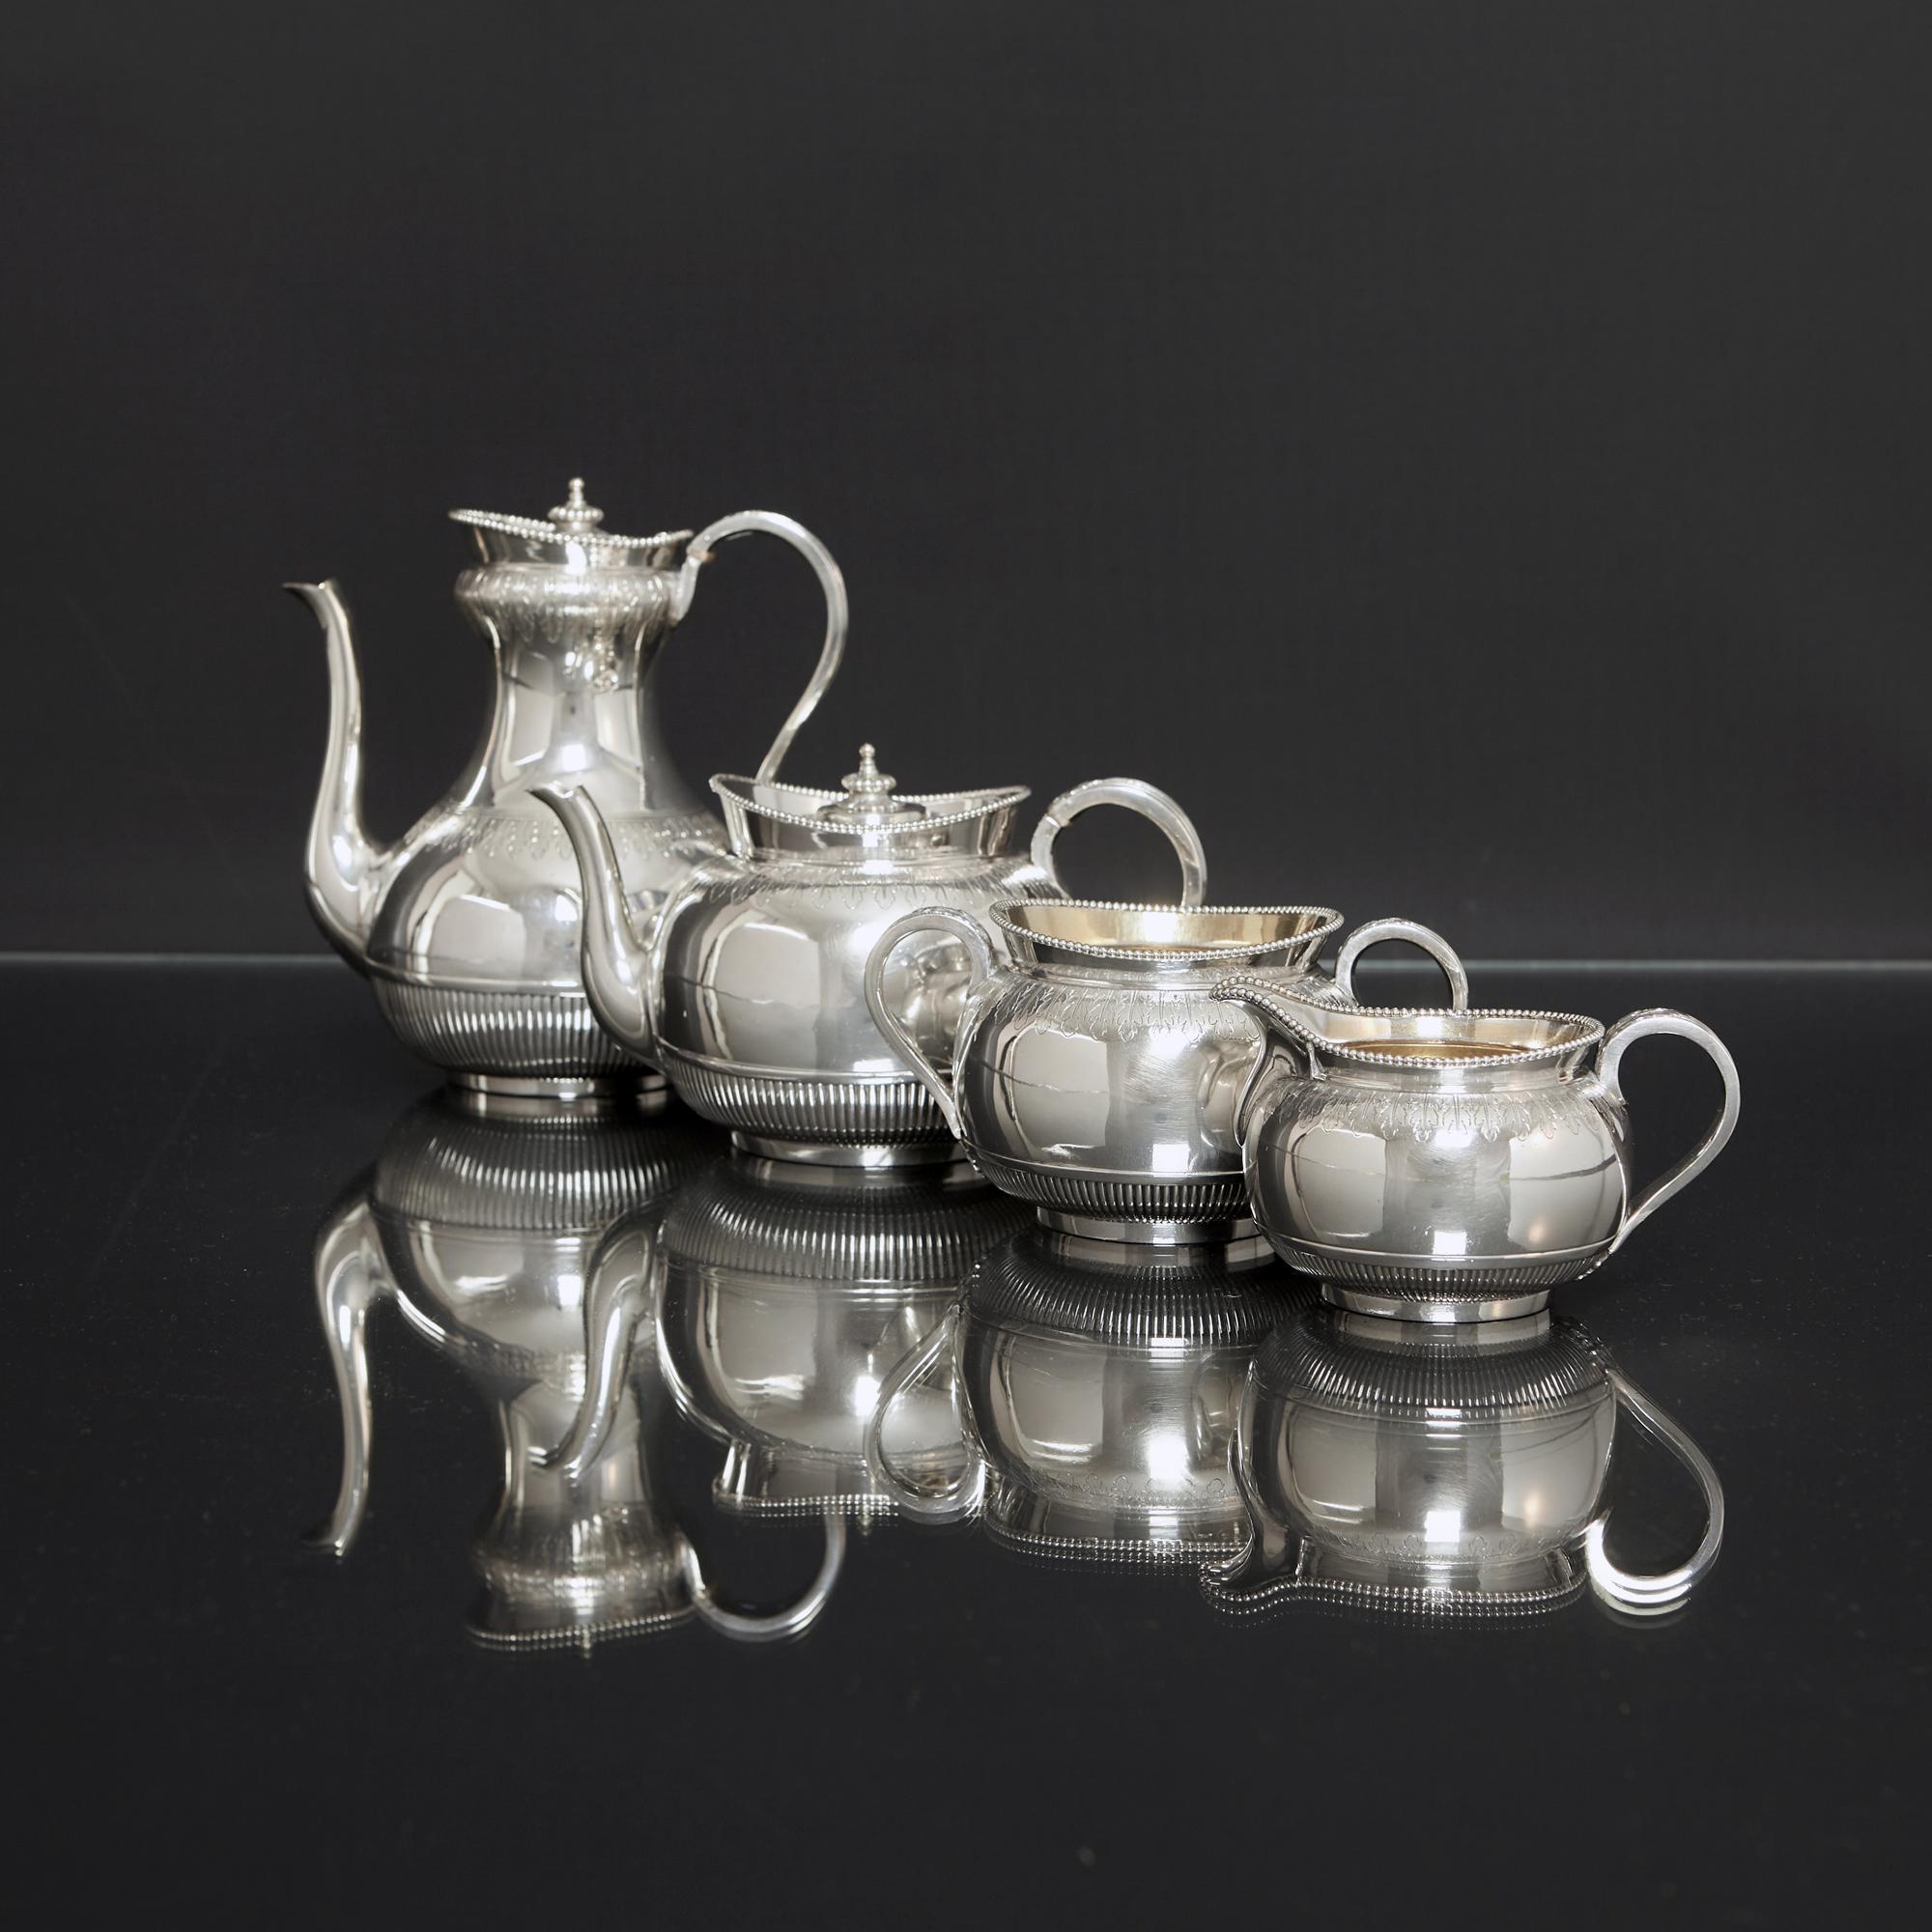 Elegantes vierteiliges viktorianisches Tee- und Kaffeeservice aus antikem Silber. Jedes Stück ist von Hand ziseliert und graviert, mit Akanthusblatt-Schürzen, feinen Rillen um den Boden des Körpers und einem eleganten Perlenmuster-Rand. Die